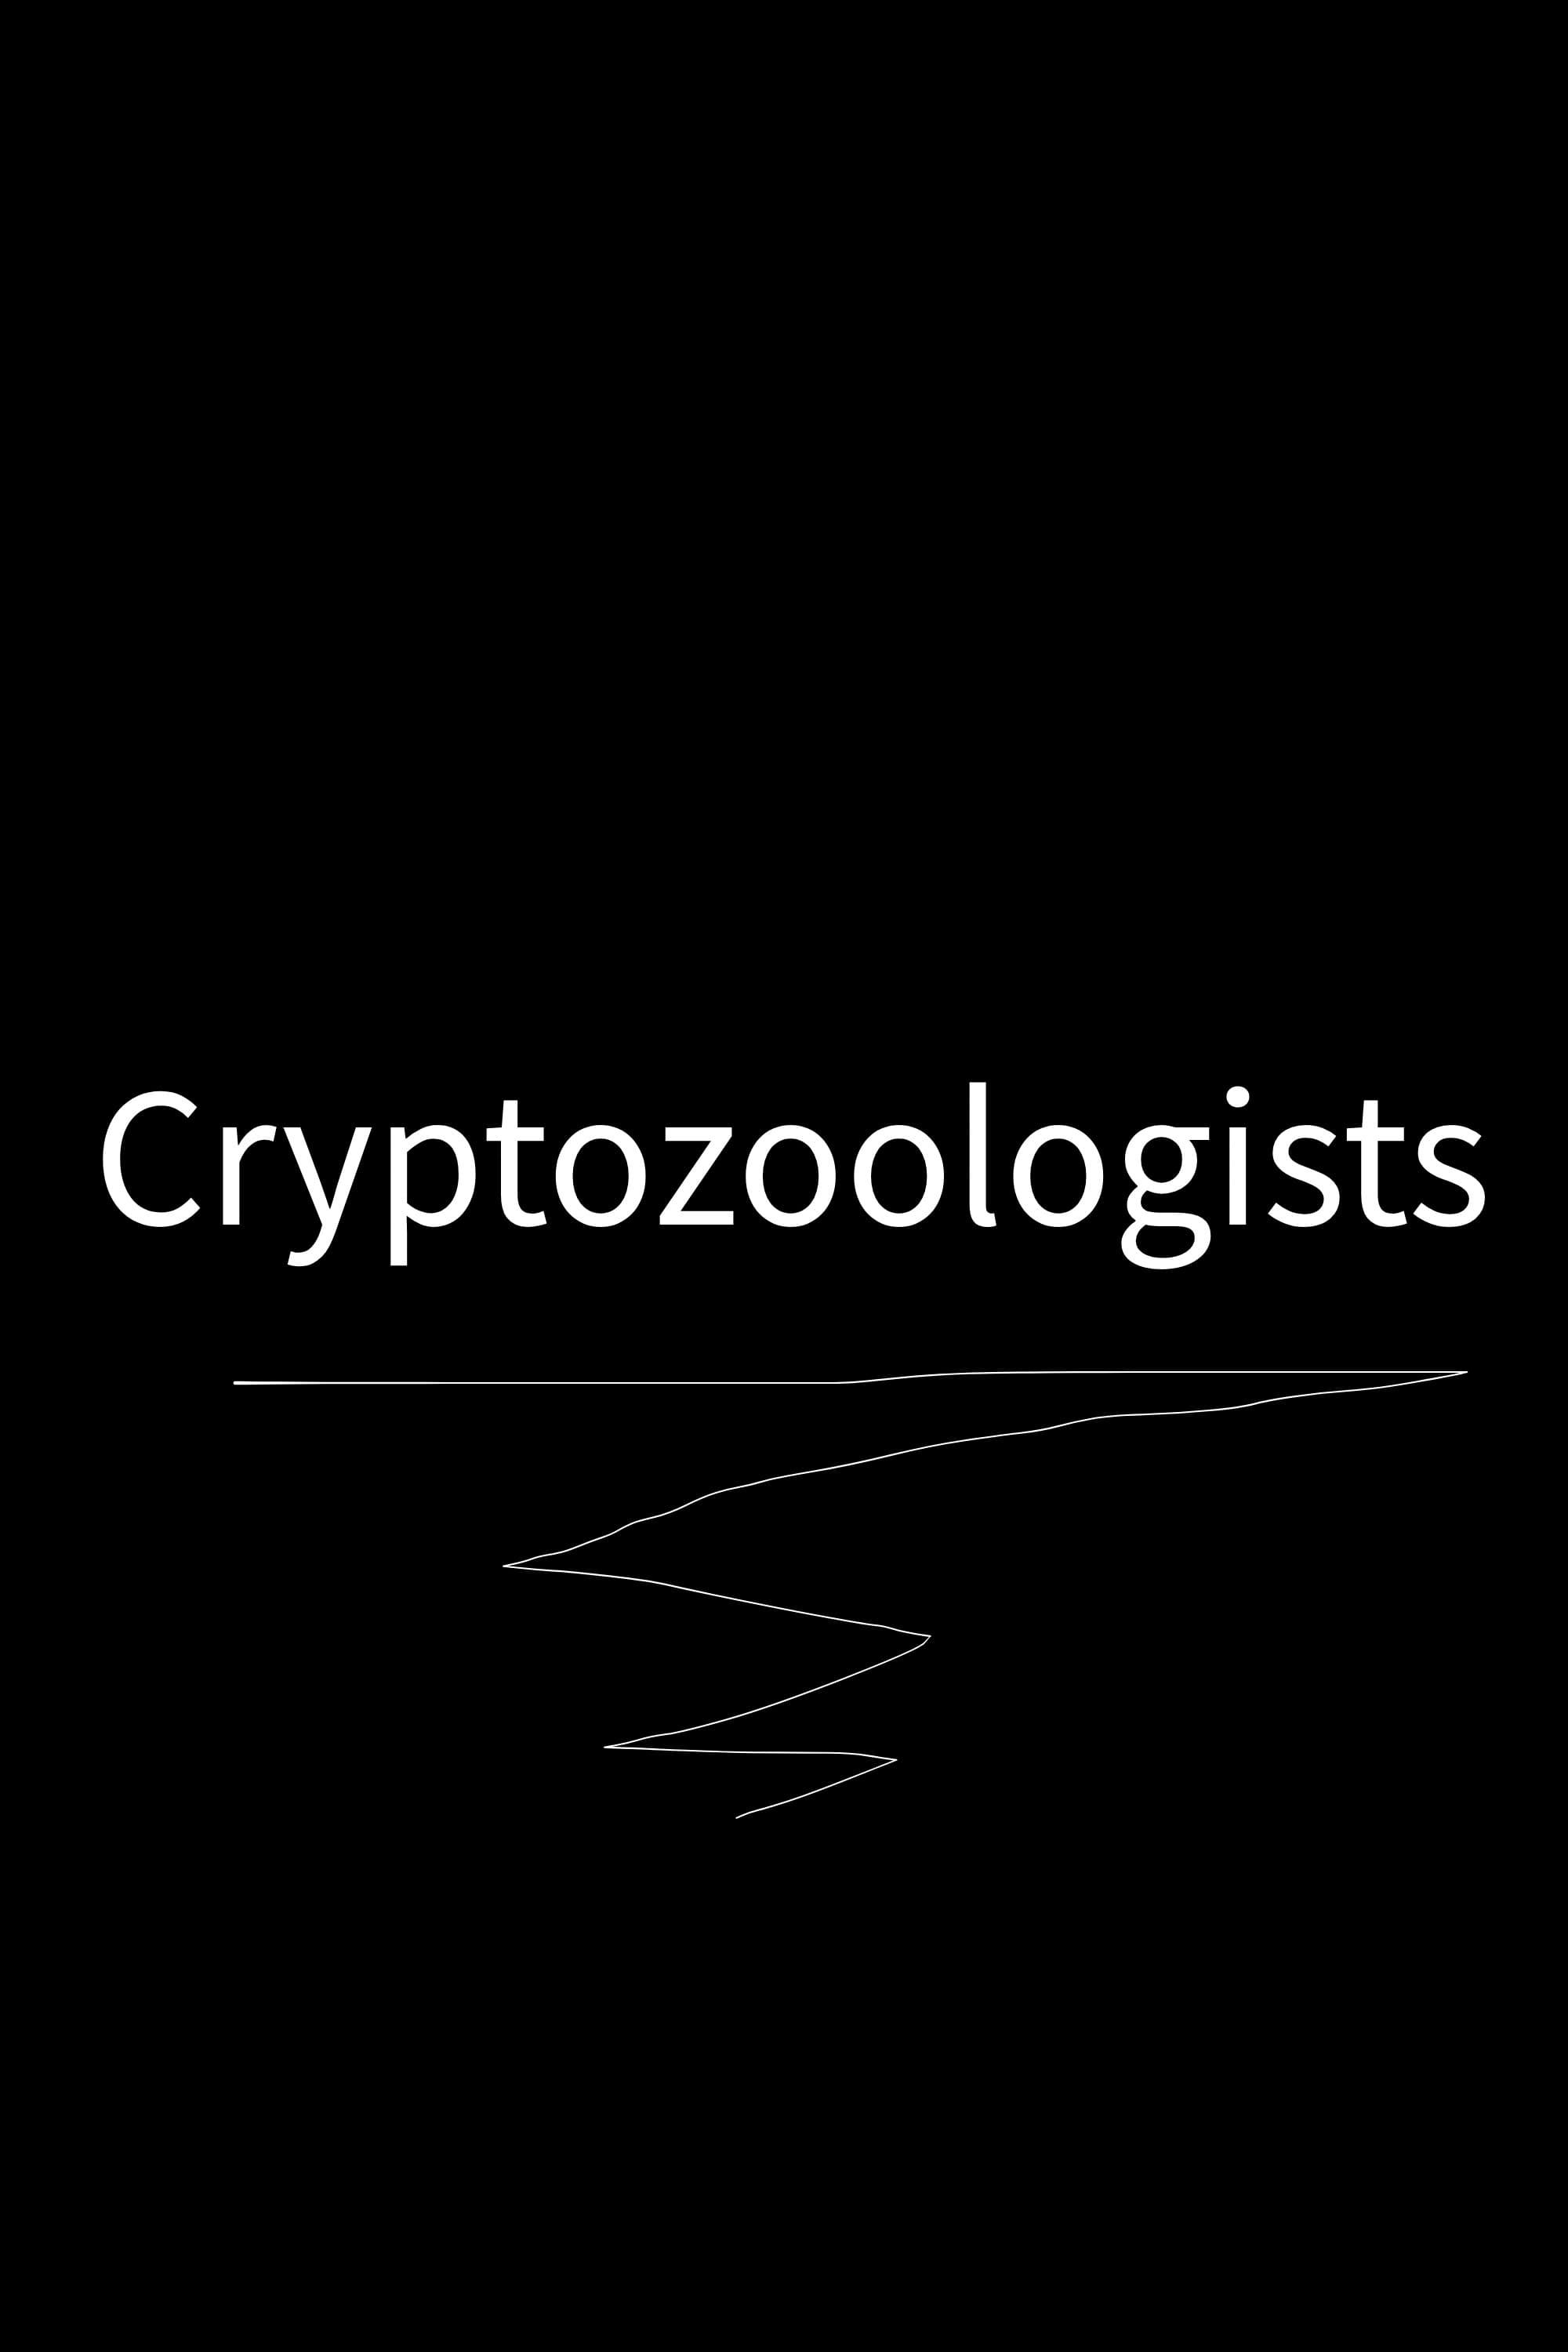 Cryptozoologists